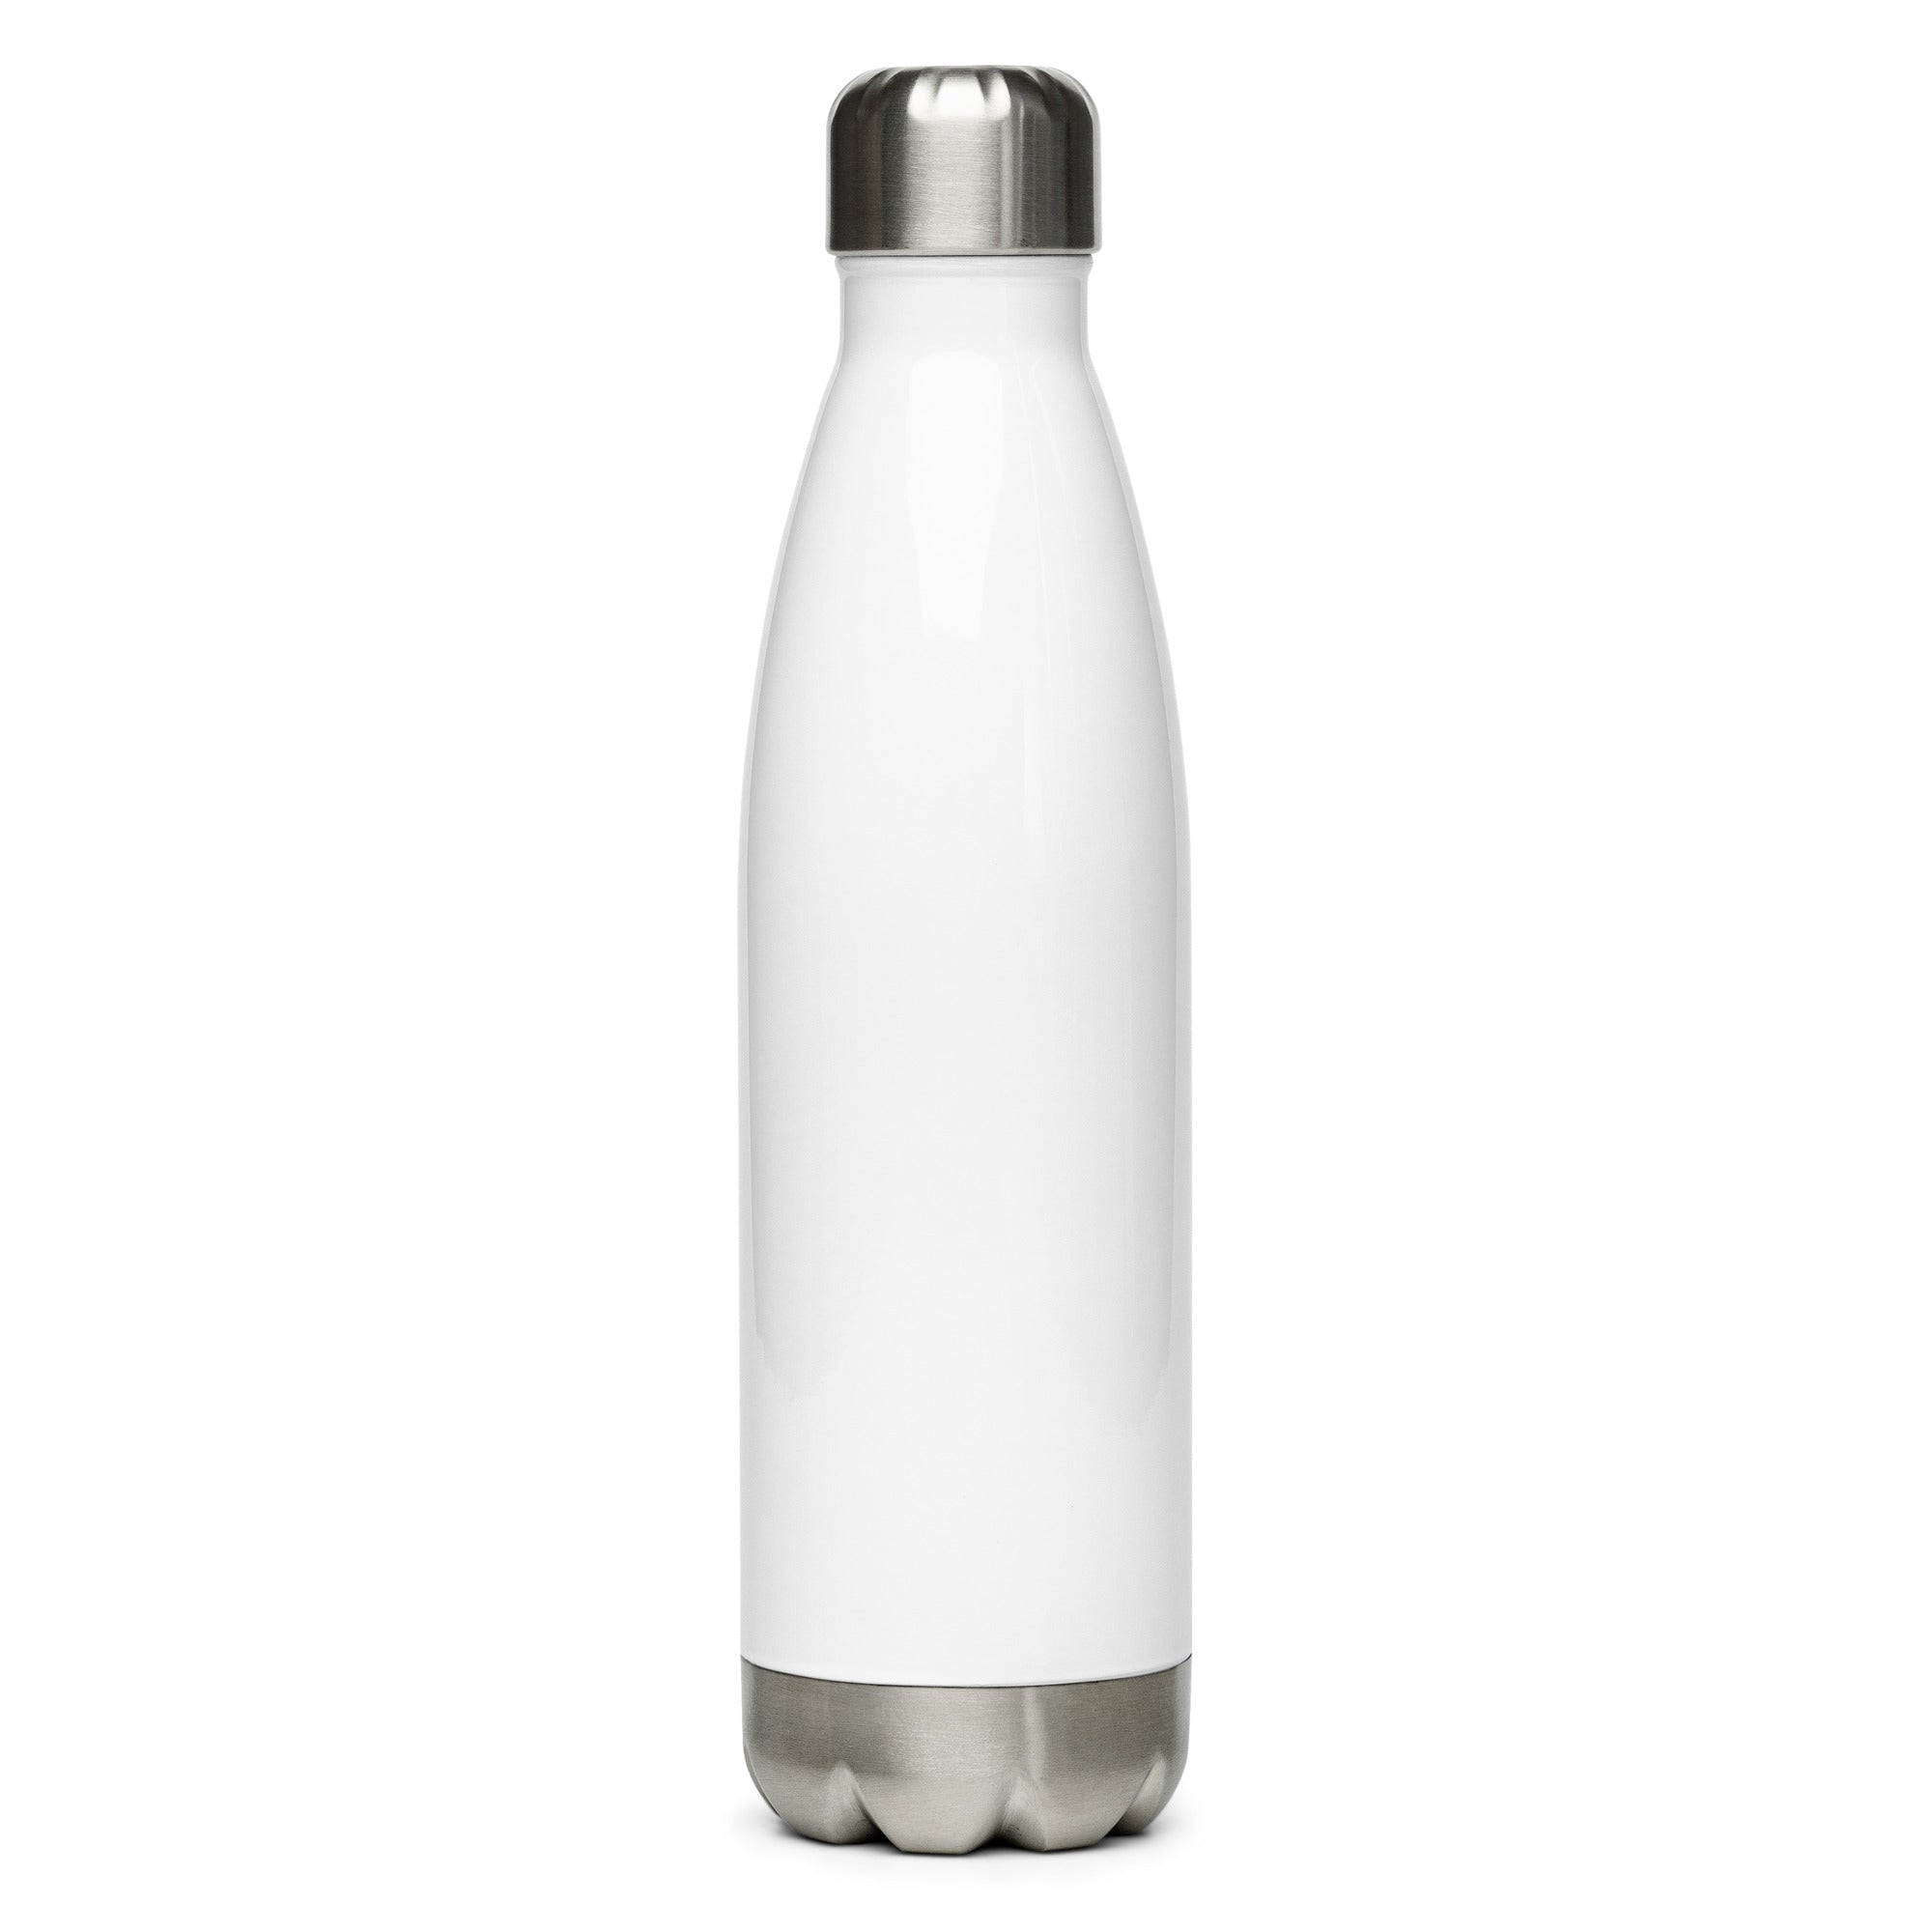 Stainless steel water bottle - Jeremiah 17:7